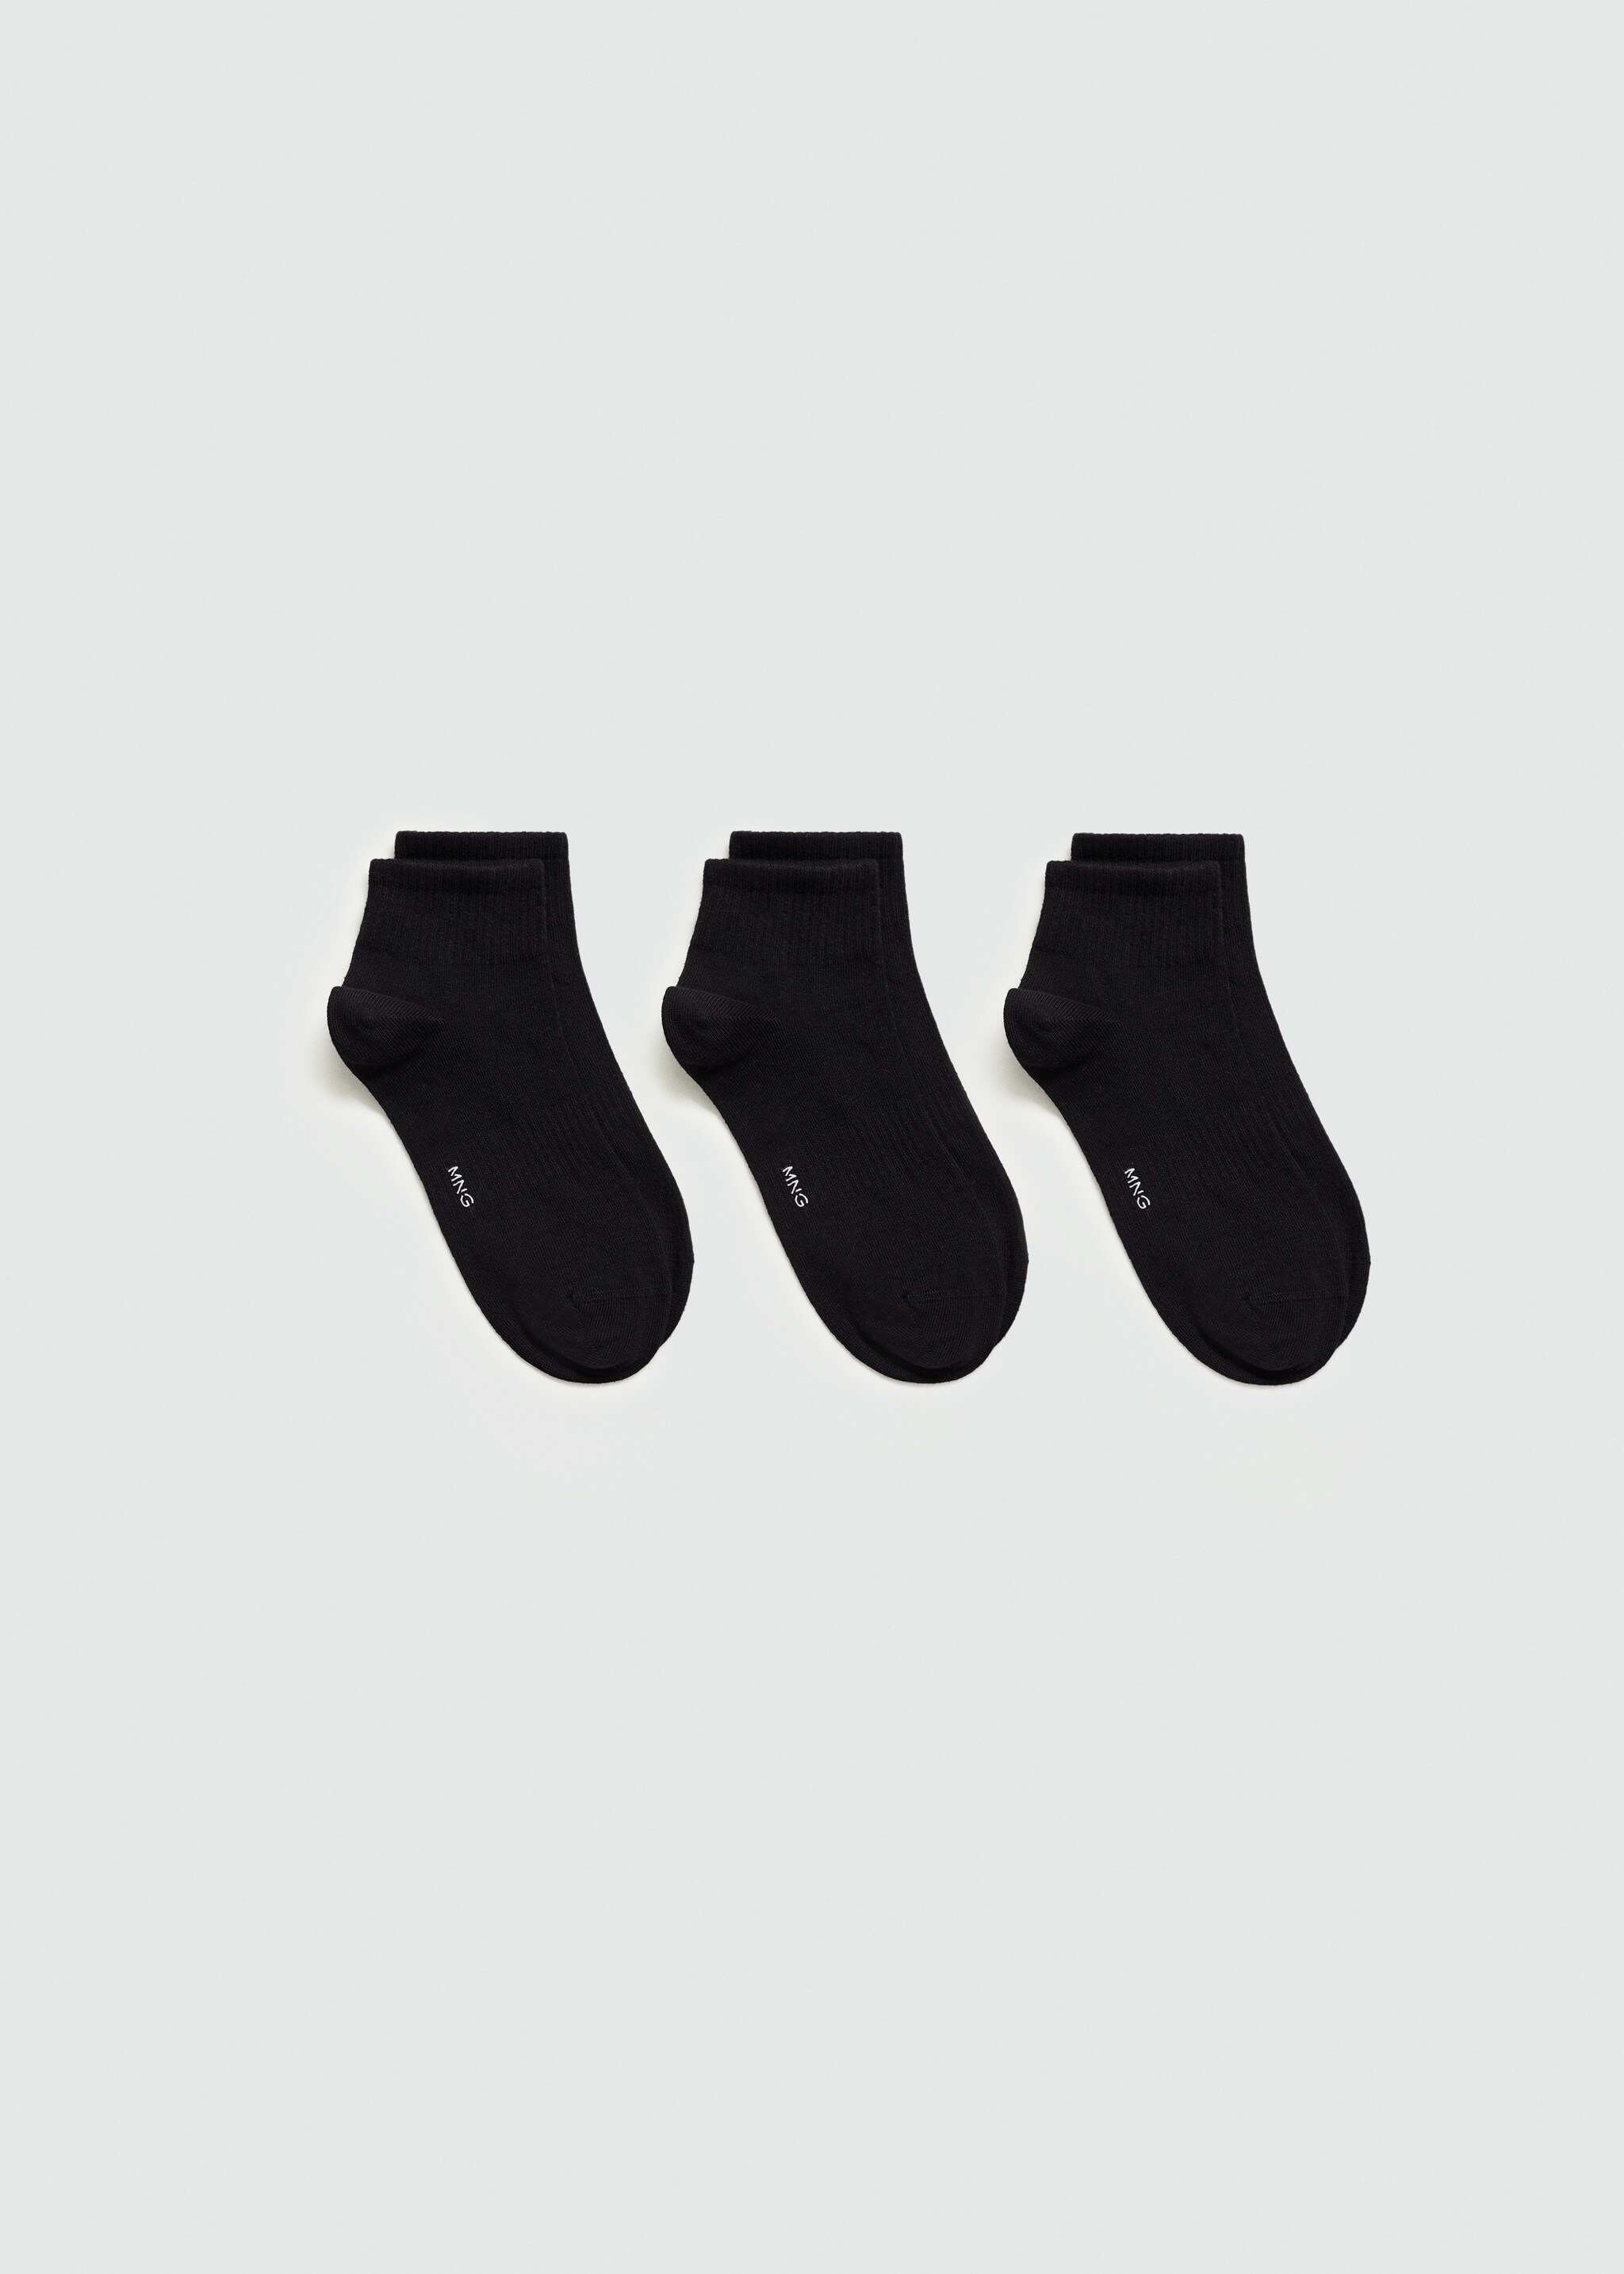 Lot 3 paires de chaussettes côtelées coton - Article sans modèle